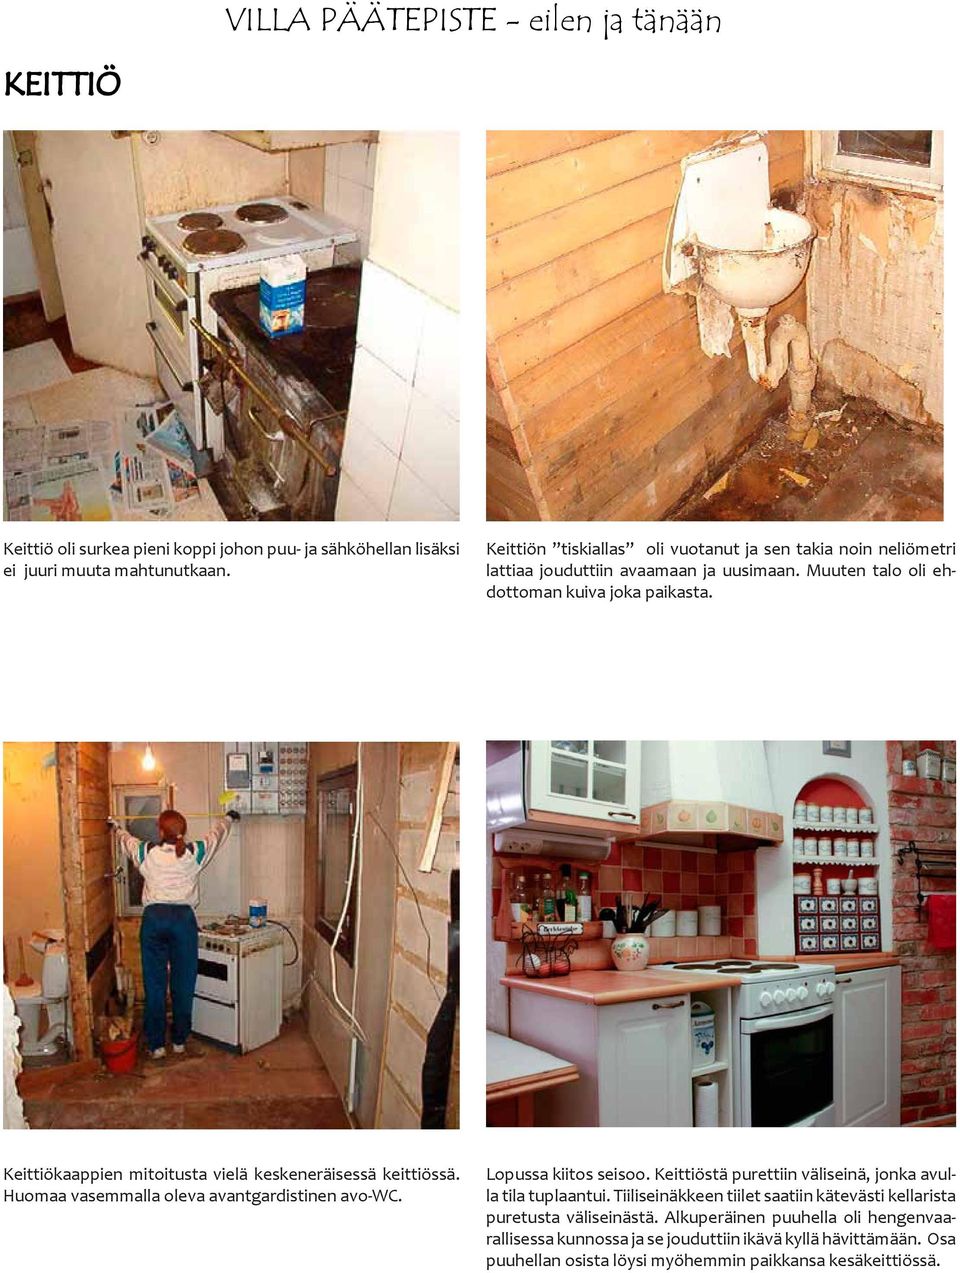 Keittiökaappien mitoitusta vielä keskeneräisessä keittiössä. Huomaa vasemmalla oleva avantgardistinen avo-wc. Lopussa kiitos seisoo.